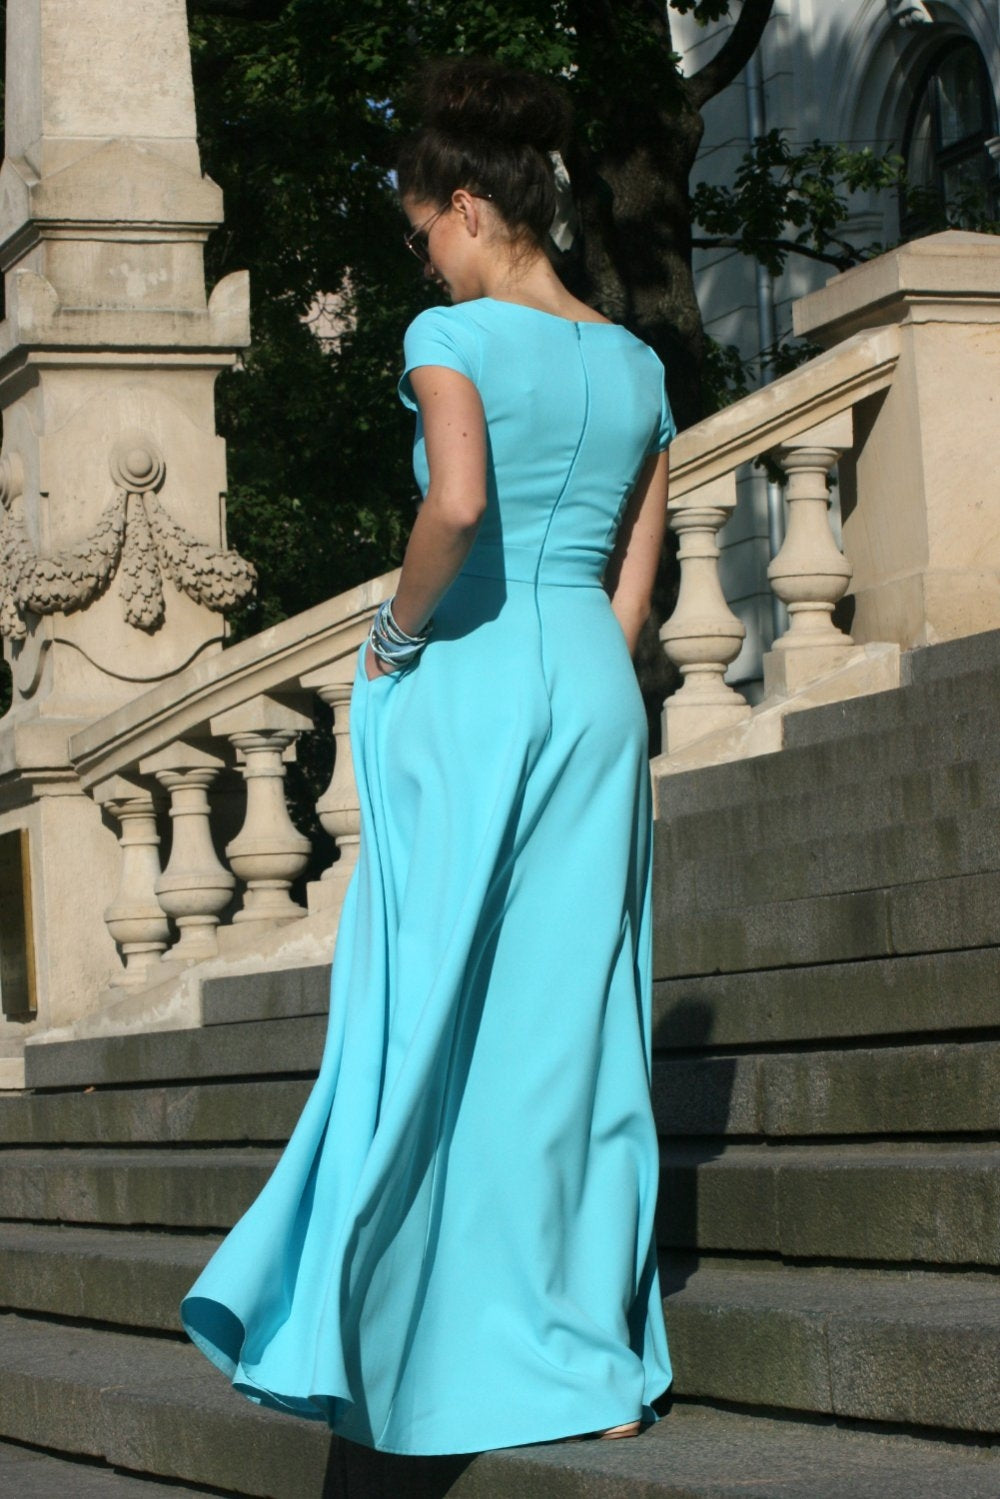 Light blue dress with v-shaped neckline